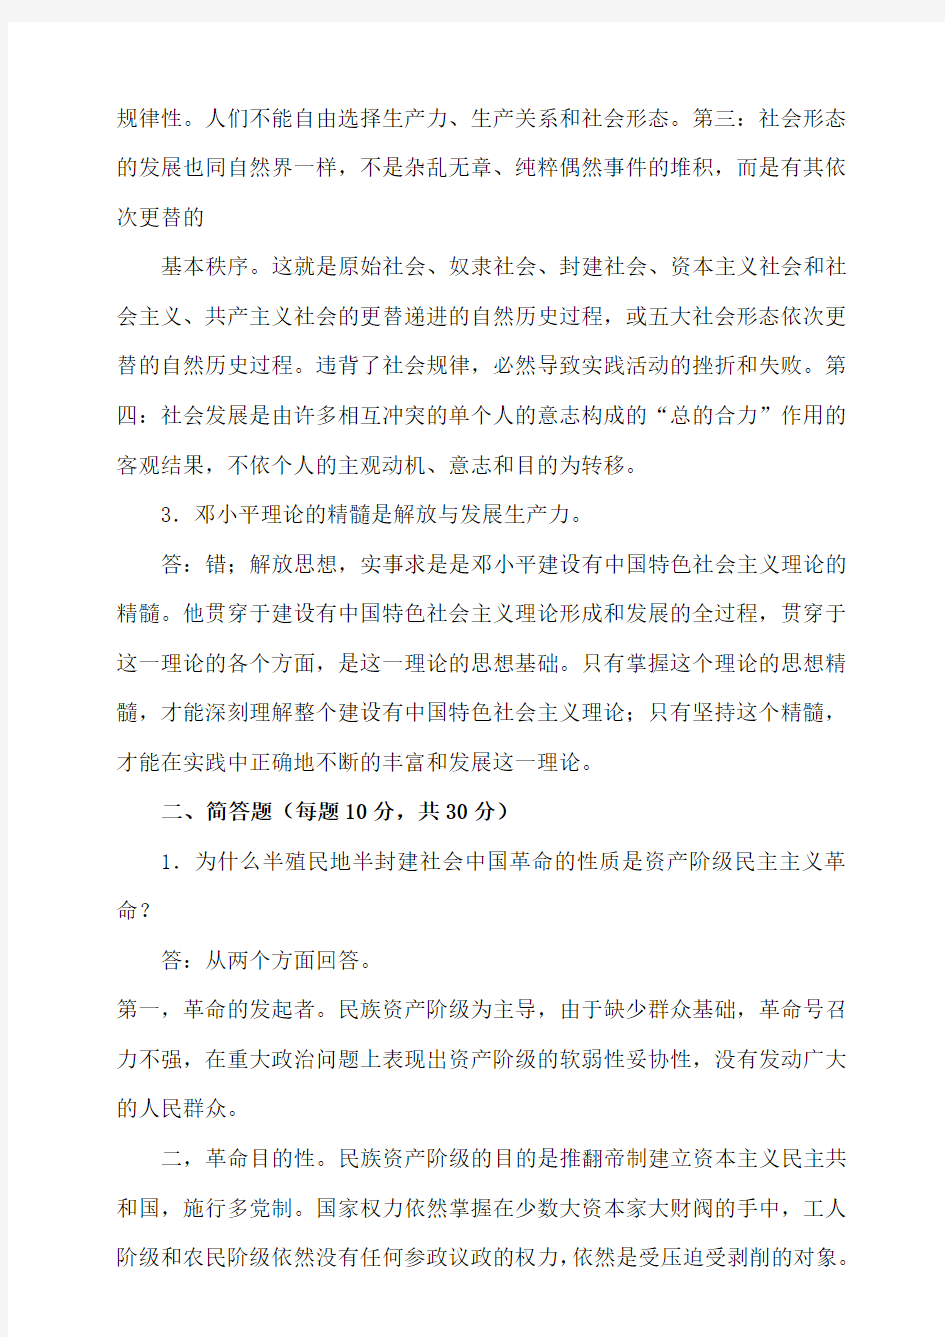 《马克思主义中国化纵论》期末考试答案